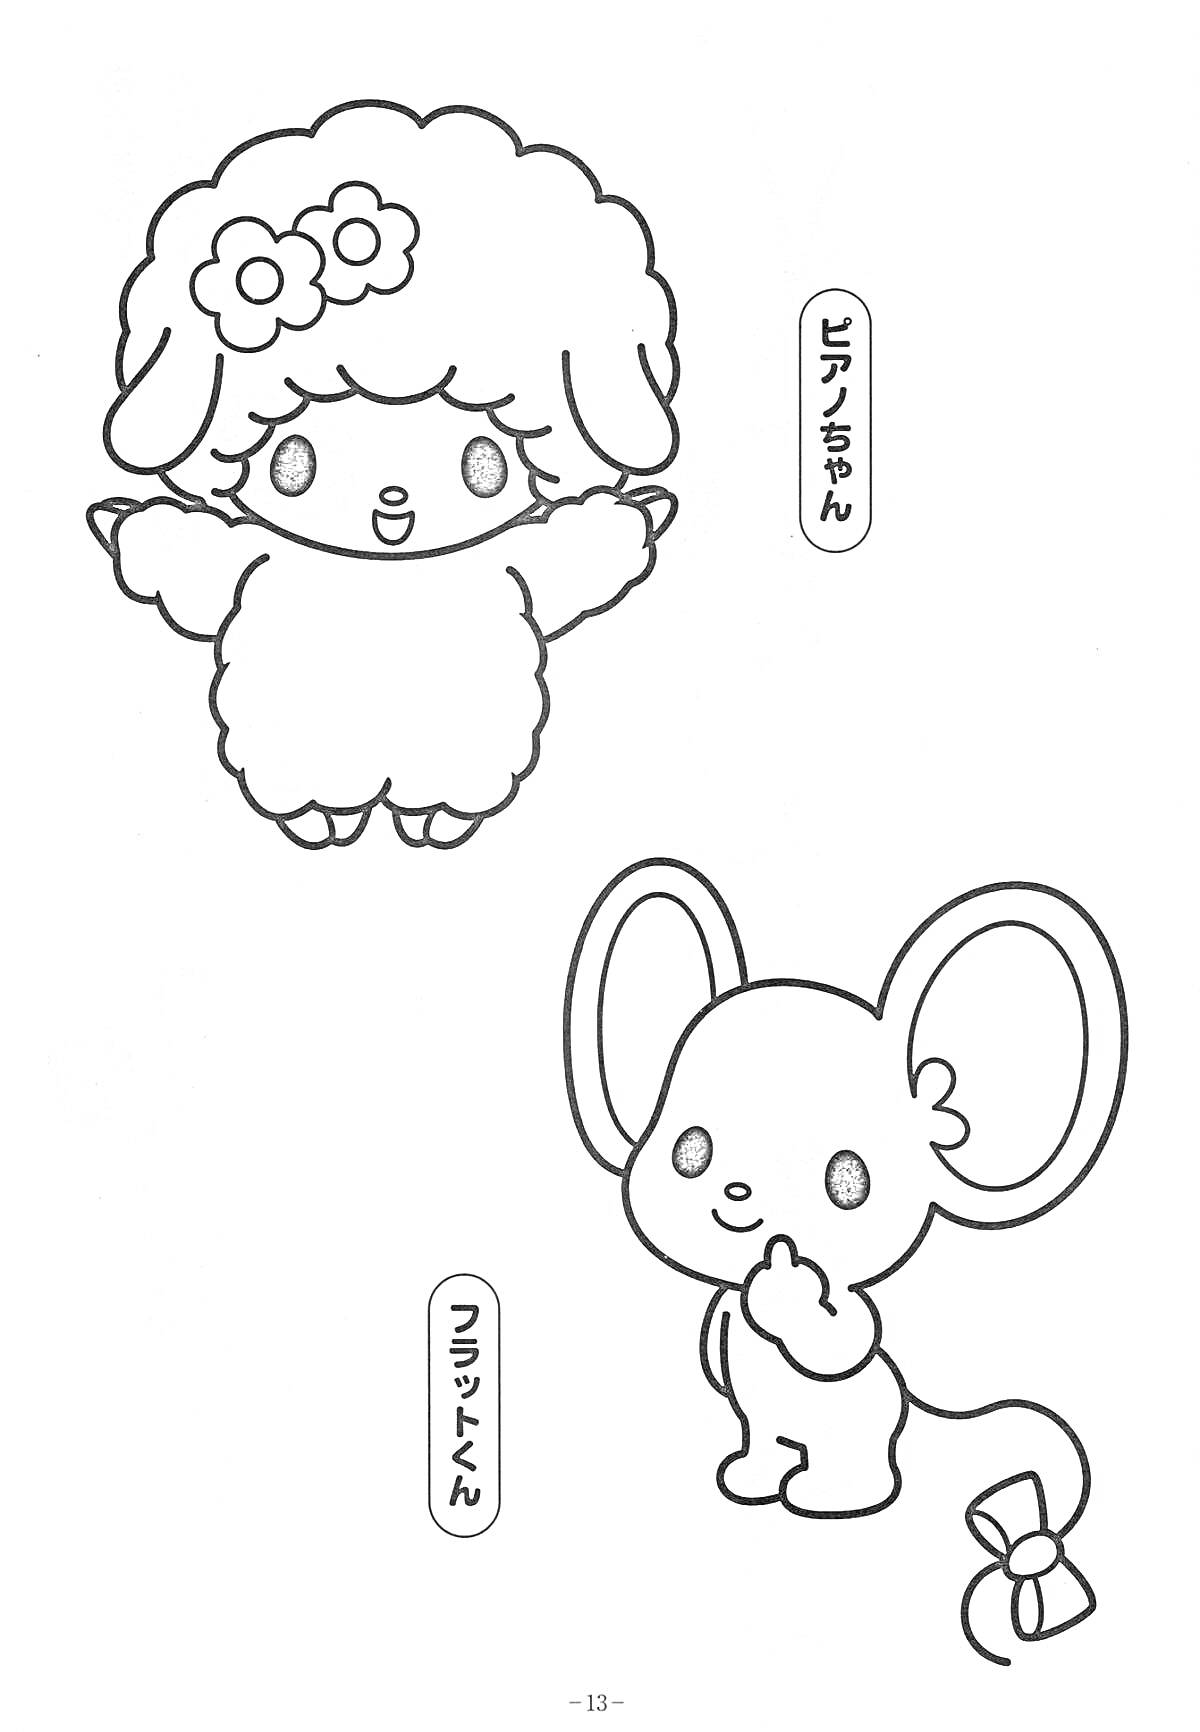 Раскраска с изображением Куроми и её друзей: овечки с цветами и мышонка с бантом на хвосте